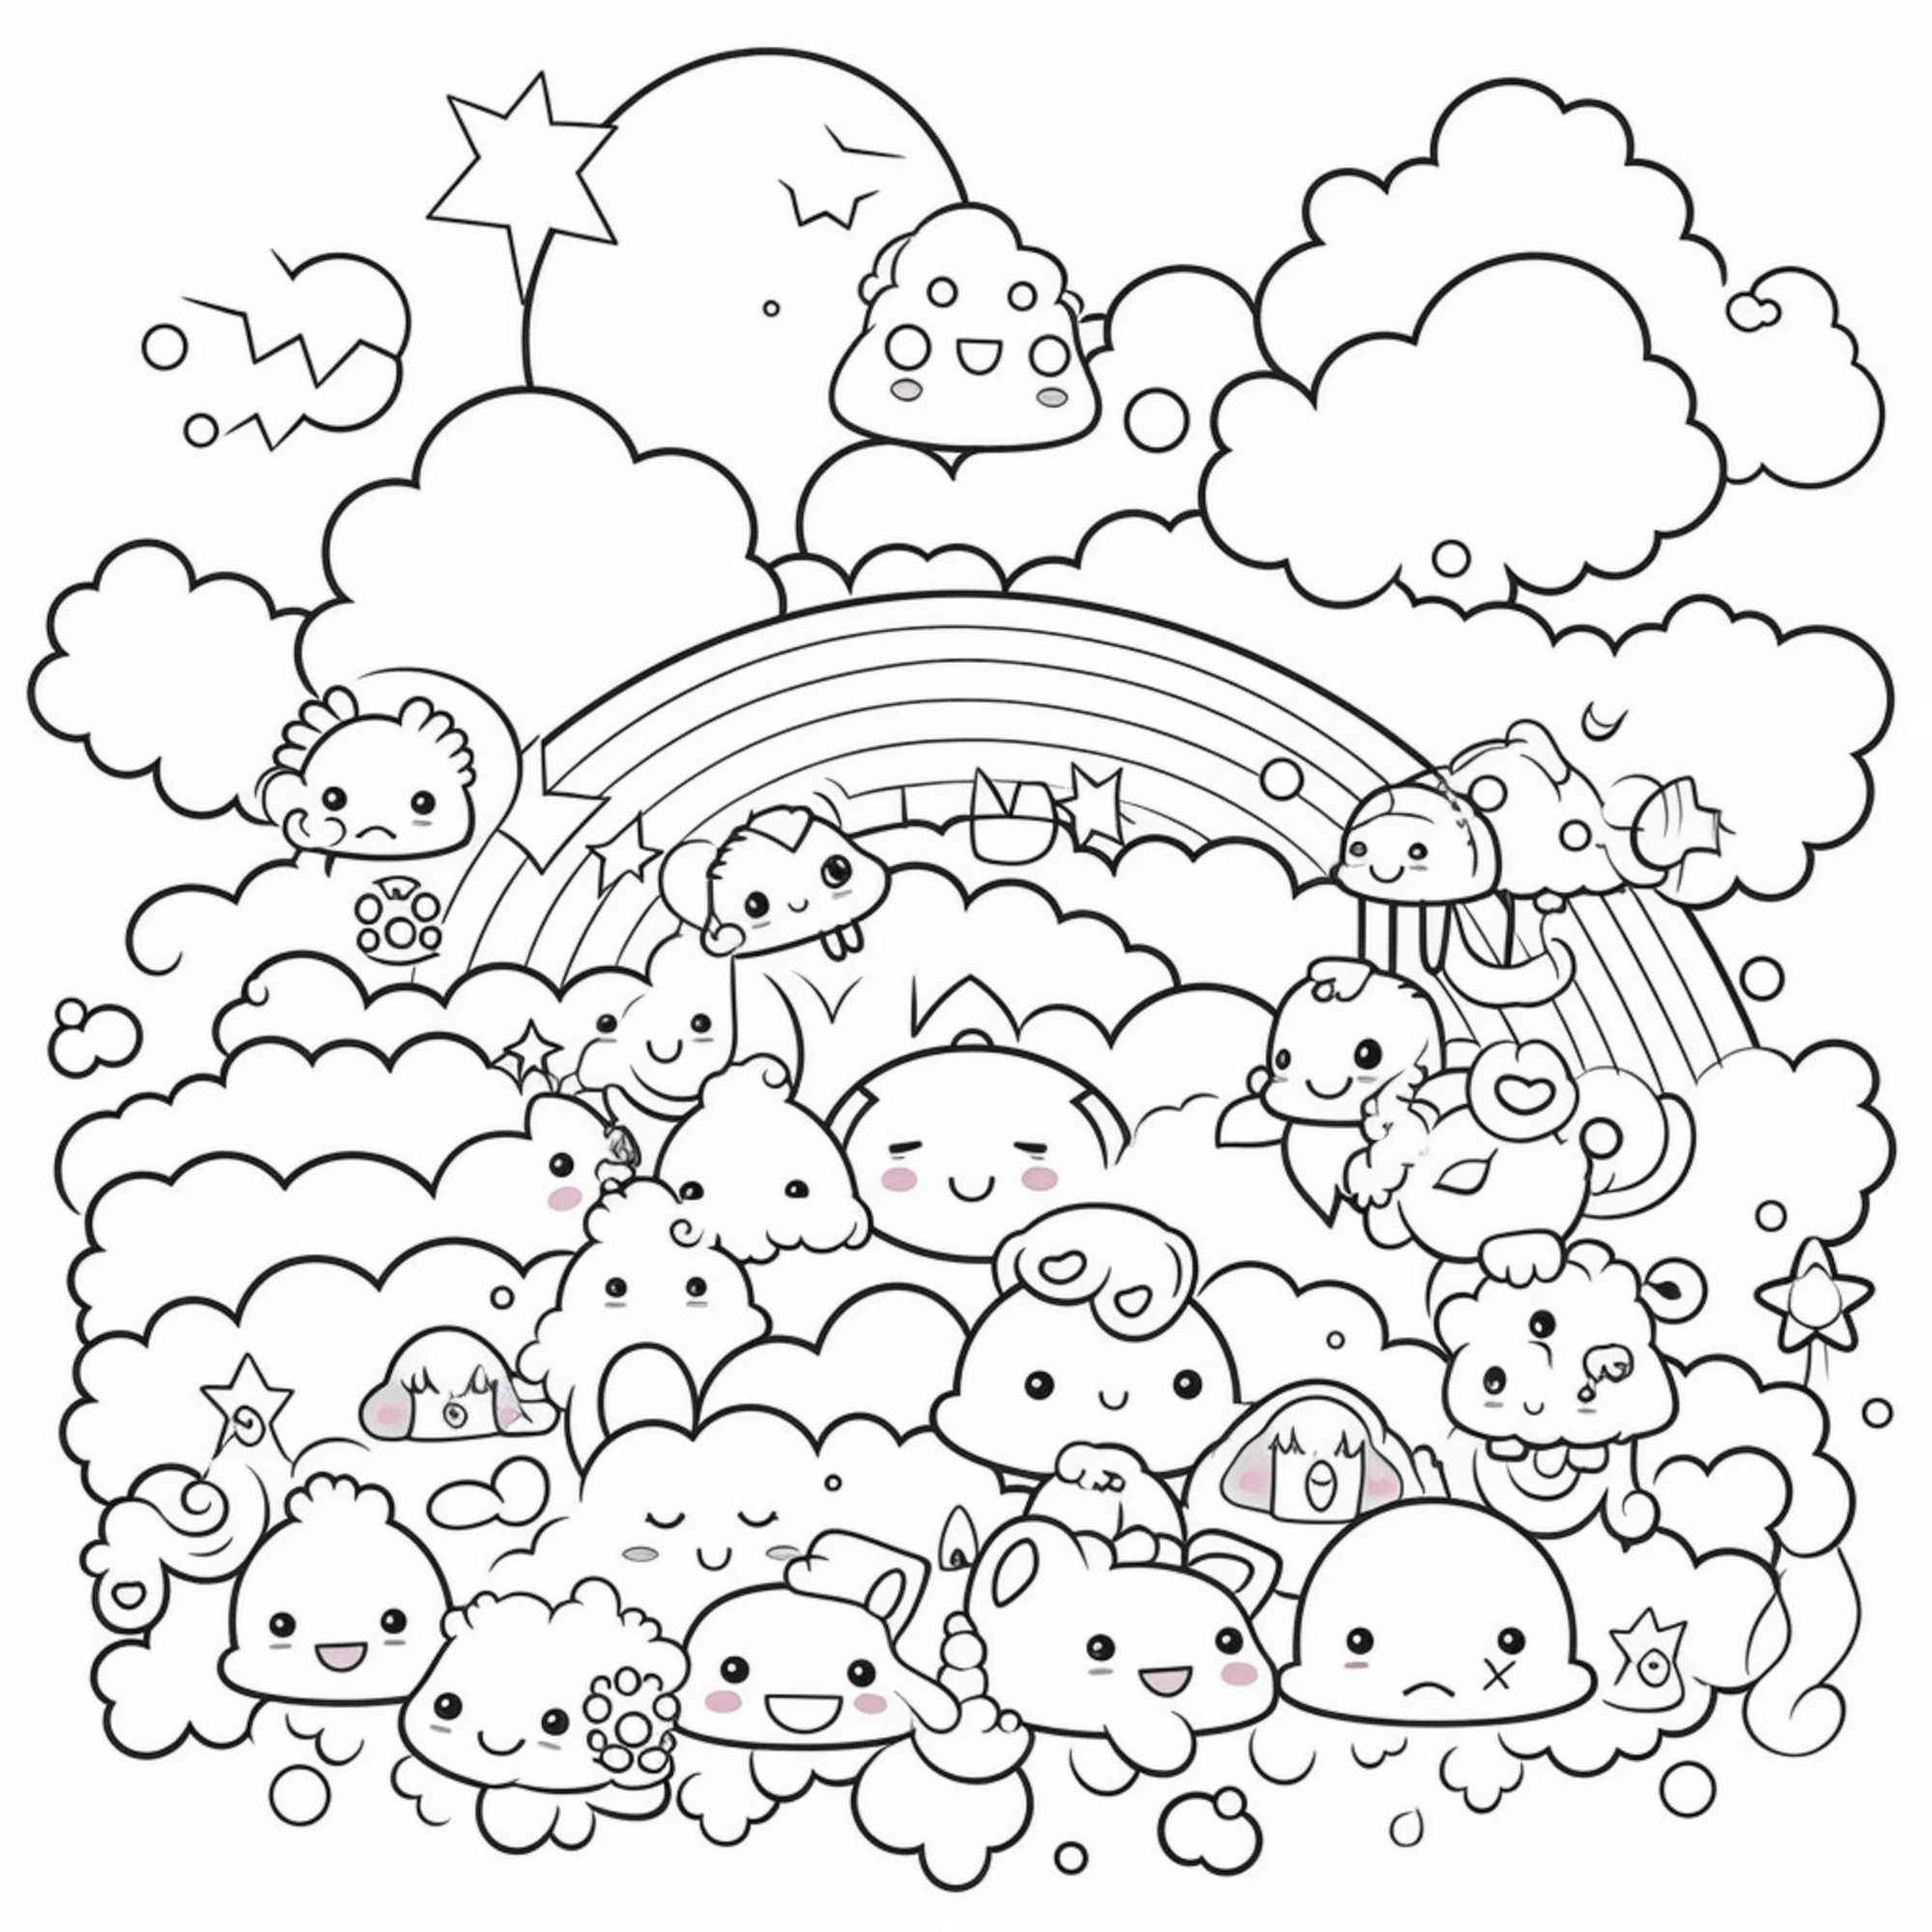 Раскраска для детей: радуга и сказочные персонажи в облаках